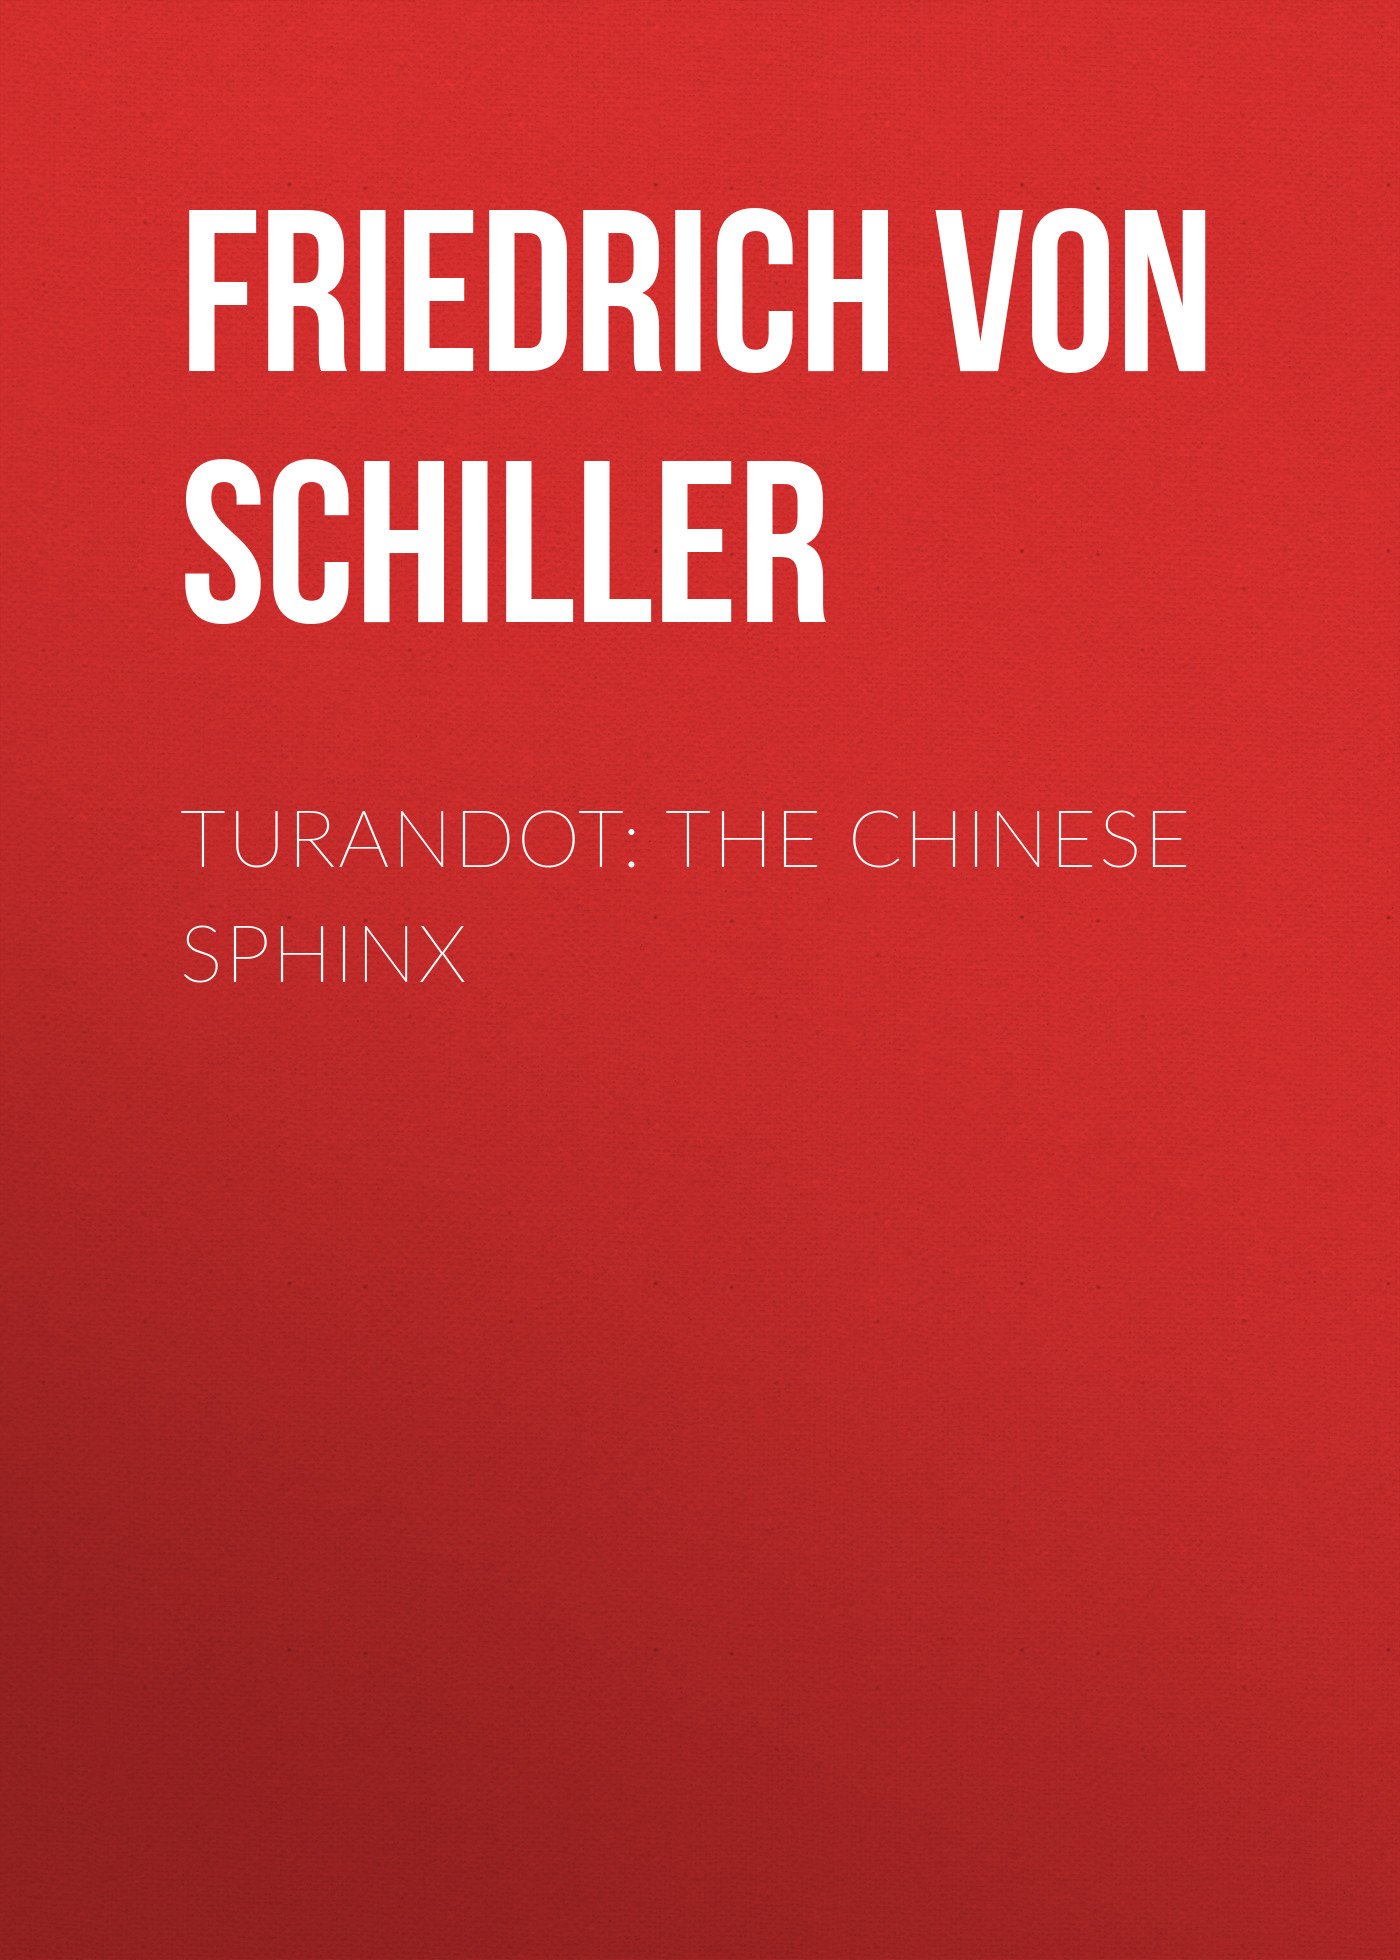 Книга Turandot: The Chinese Sphinx из серии , созданная Friedrich Schiller, может относится к жанру Литература 18 века, Зарубежная старинная литература, Зарубежная классика. Стоимость электронной книги Turandot: The Chinese Sphinx с идентификатором 25451540 составляет 0 руб.